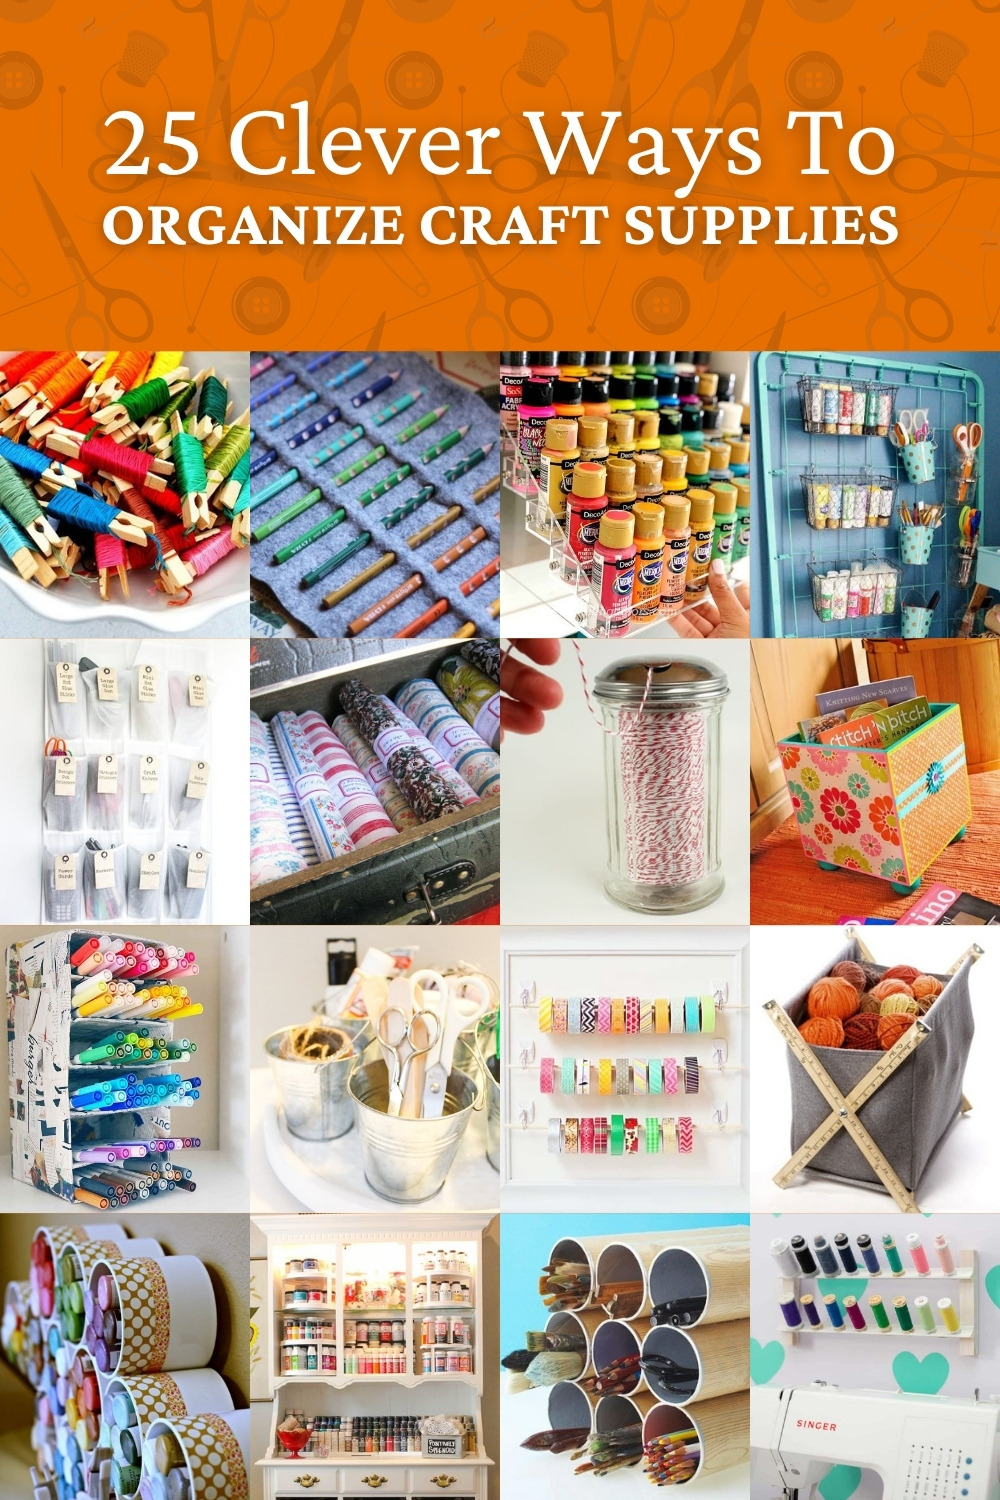 25 Clever Ways to Organize Craft Supplies